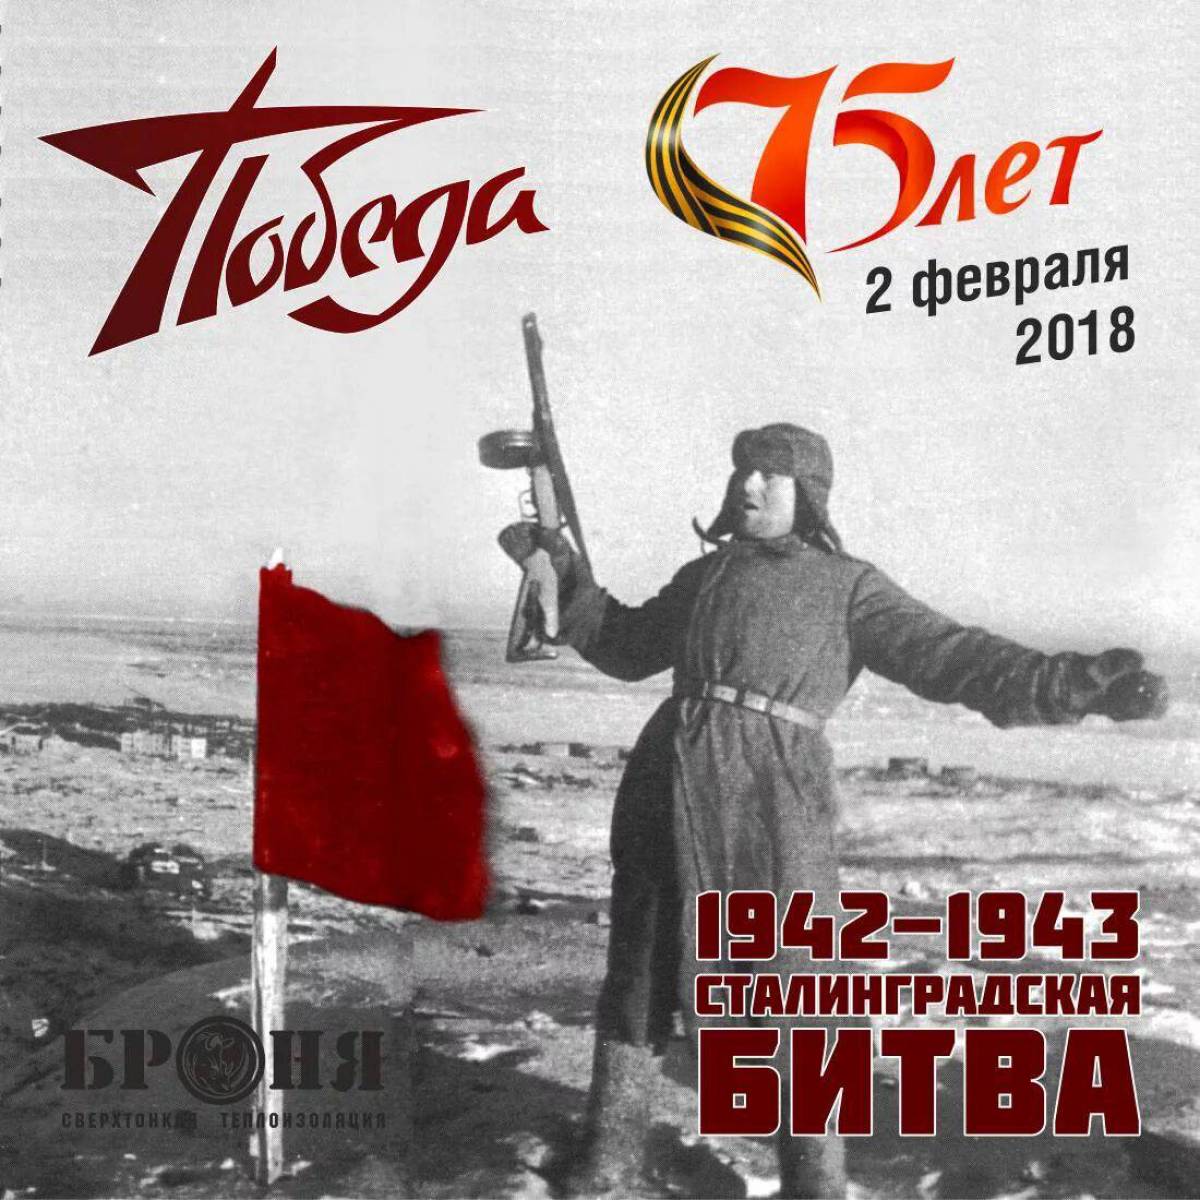 2 февраля сталинградская битва #5